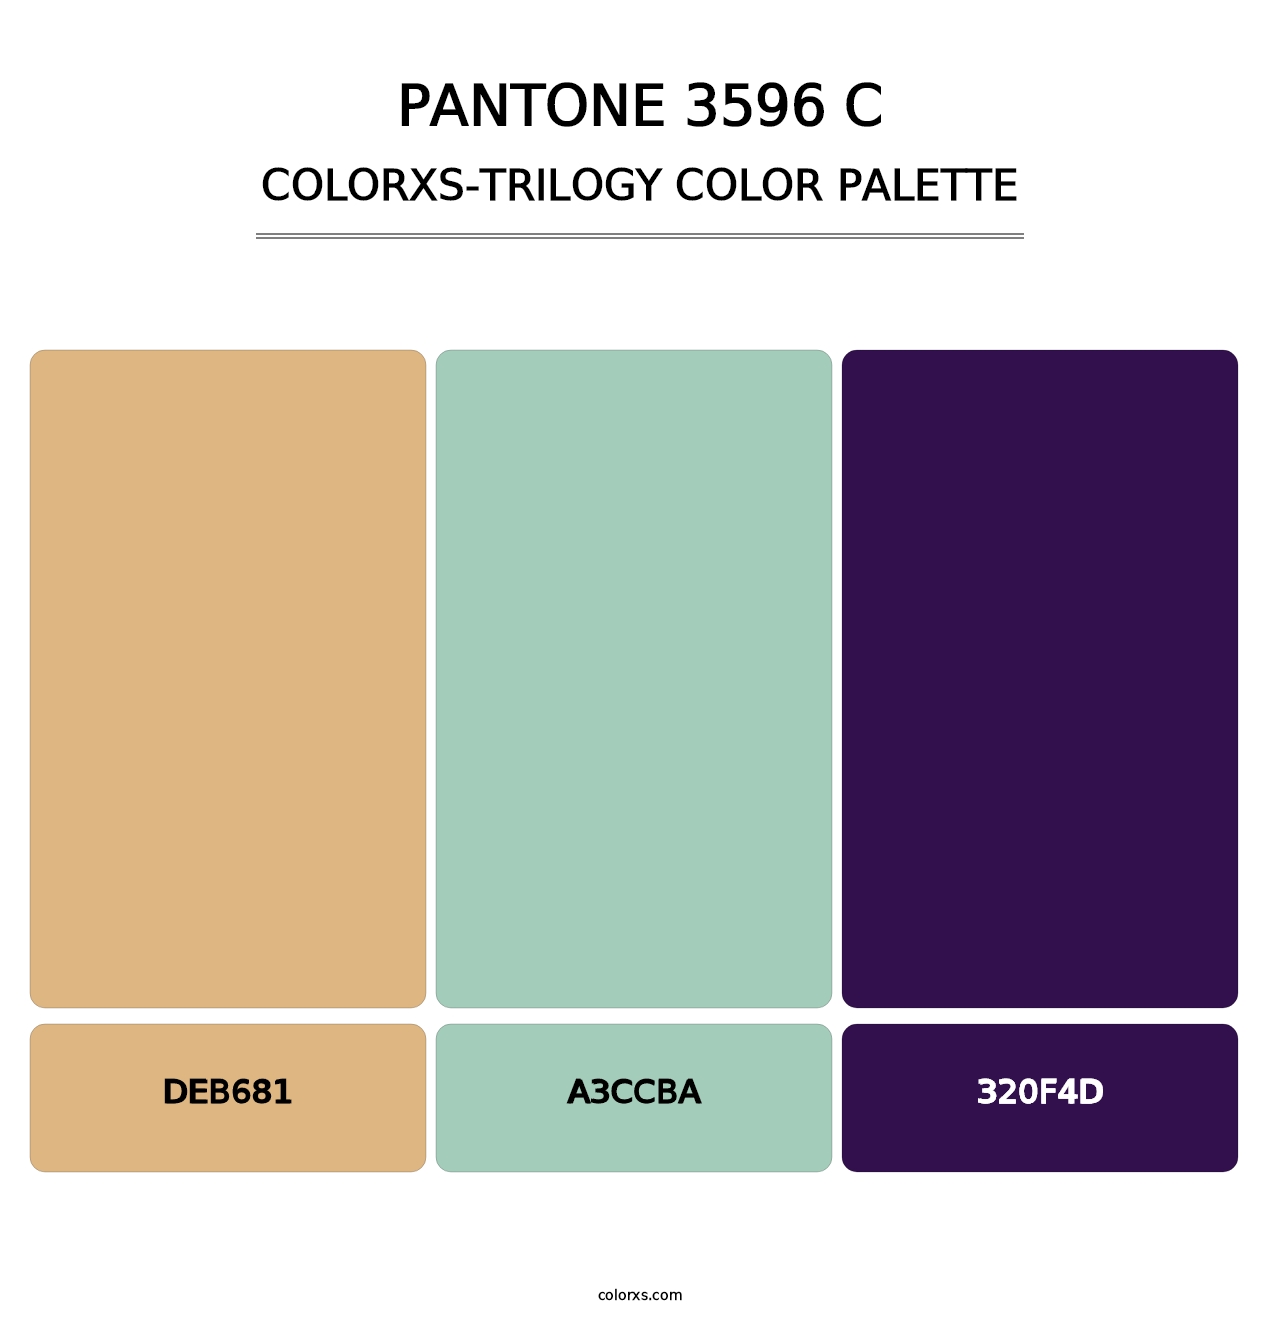 PANTONE 3596 C - Colorxs Trilogy Palette